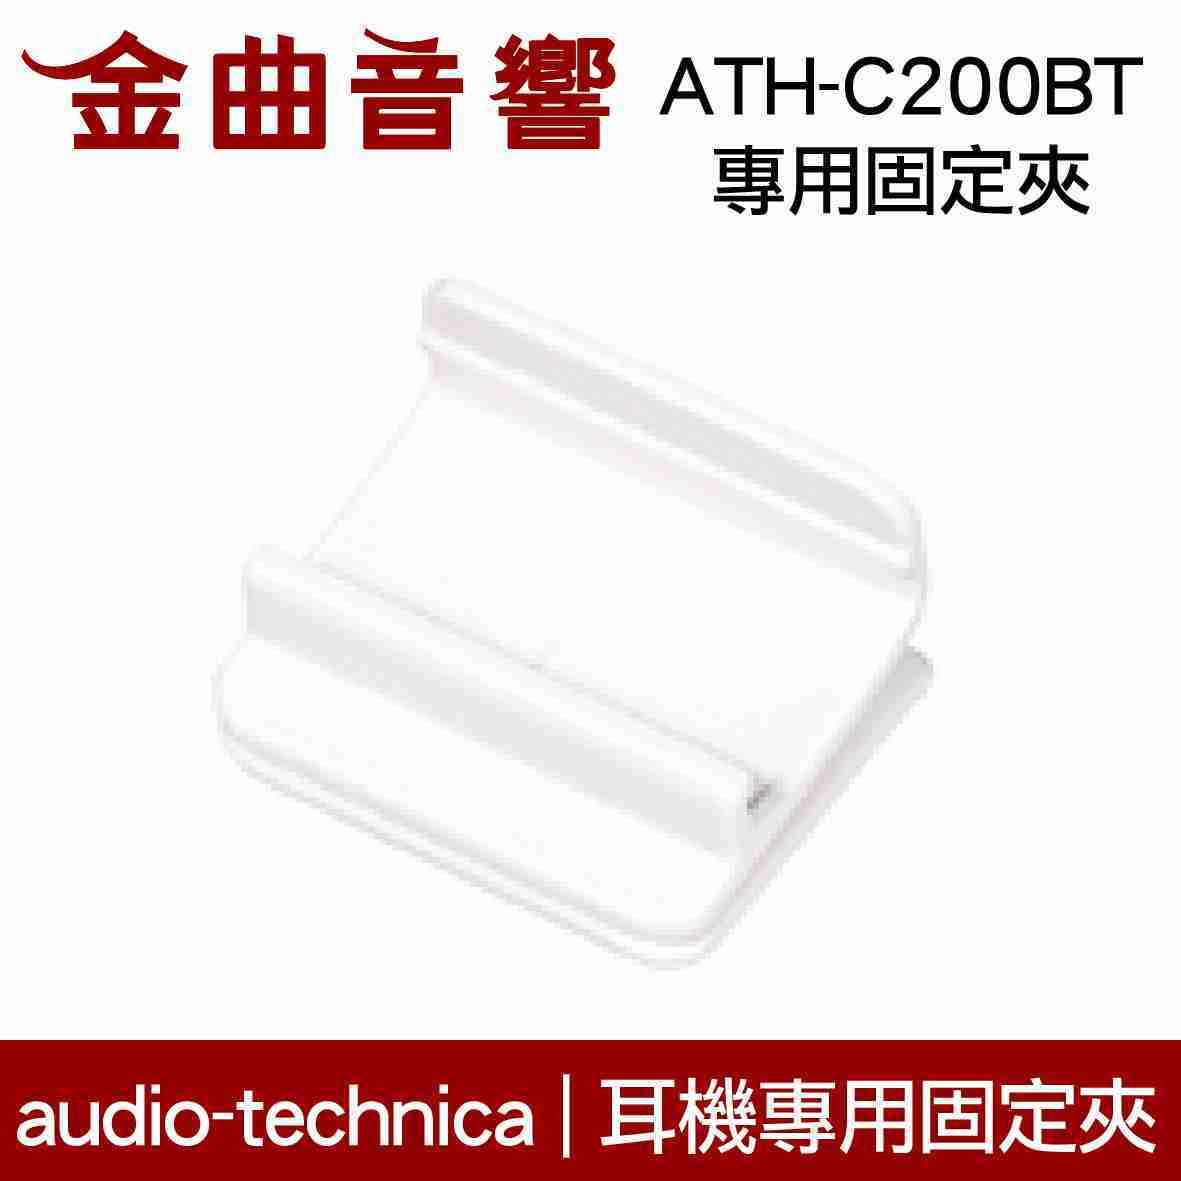 鐵三角 白色 固定夾 適用 ATH-C200BT 耳機 專用夾 | 金曲音響